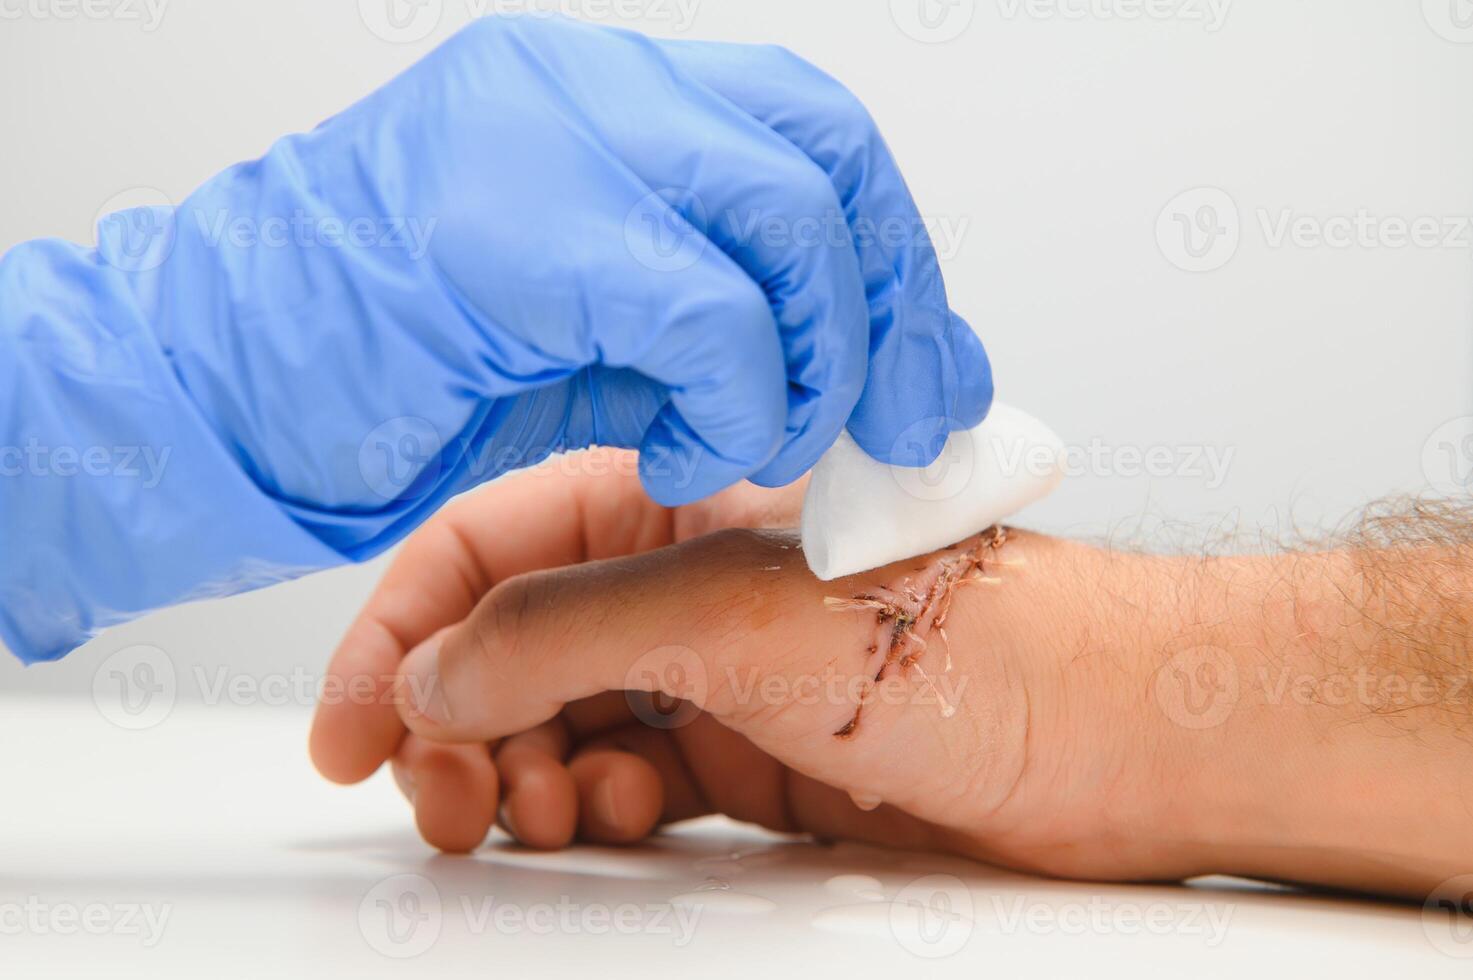 enfermero limpieza herida con algodón pelota y vendaje colocar, herida cuidado proceso foto